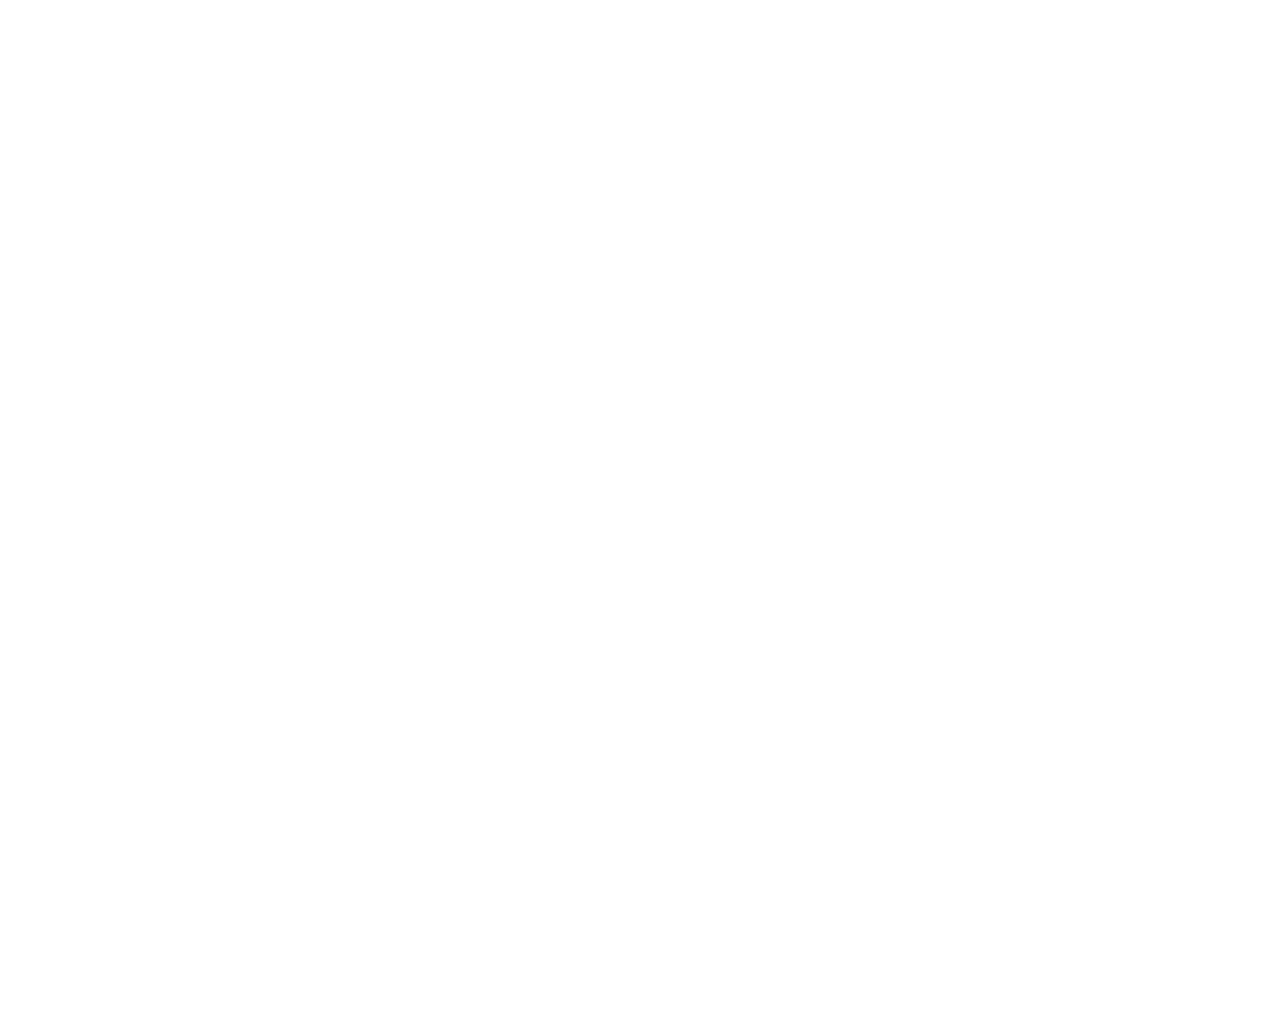 Reliable logistics 's logo